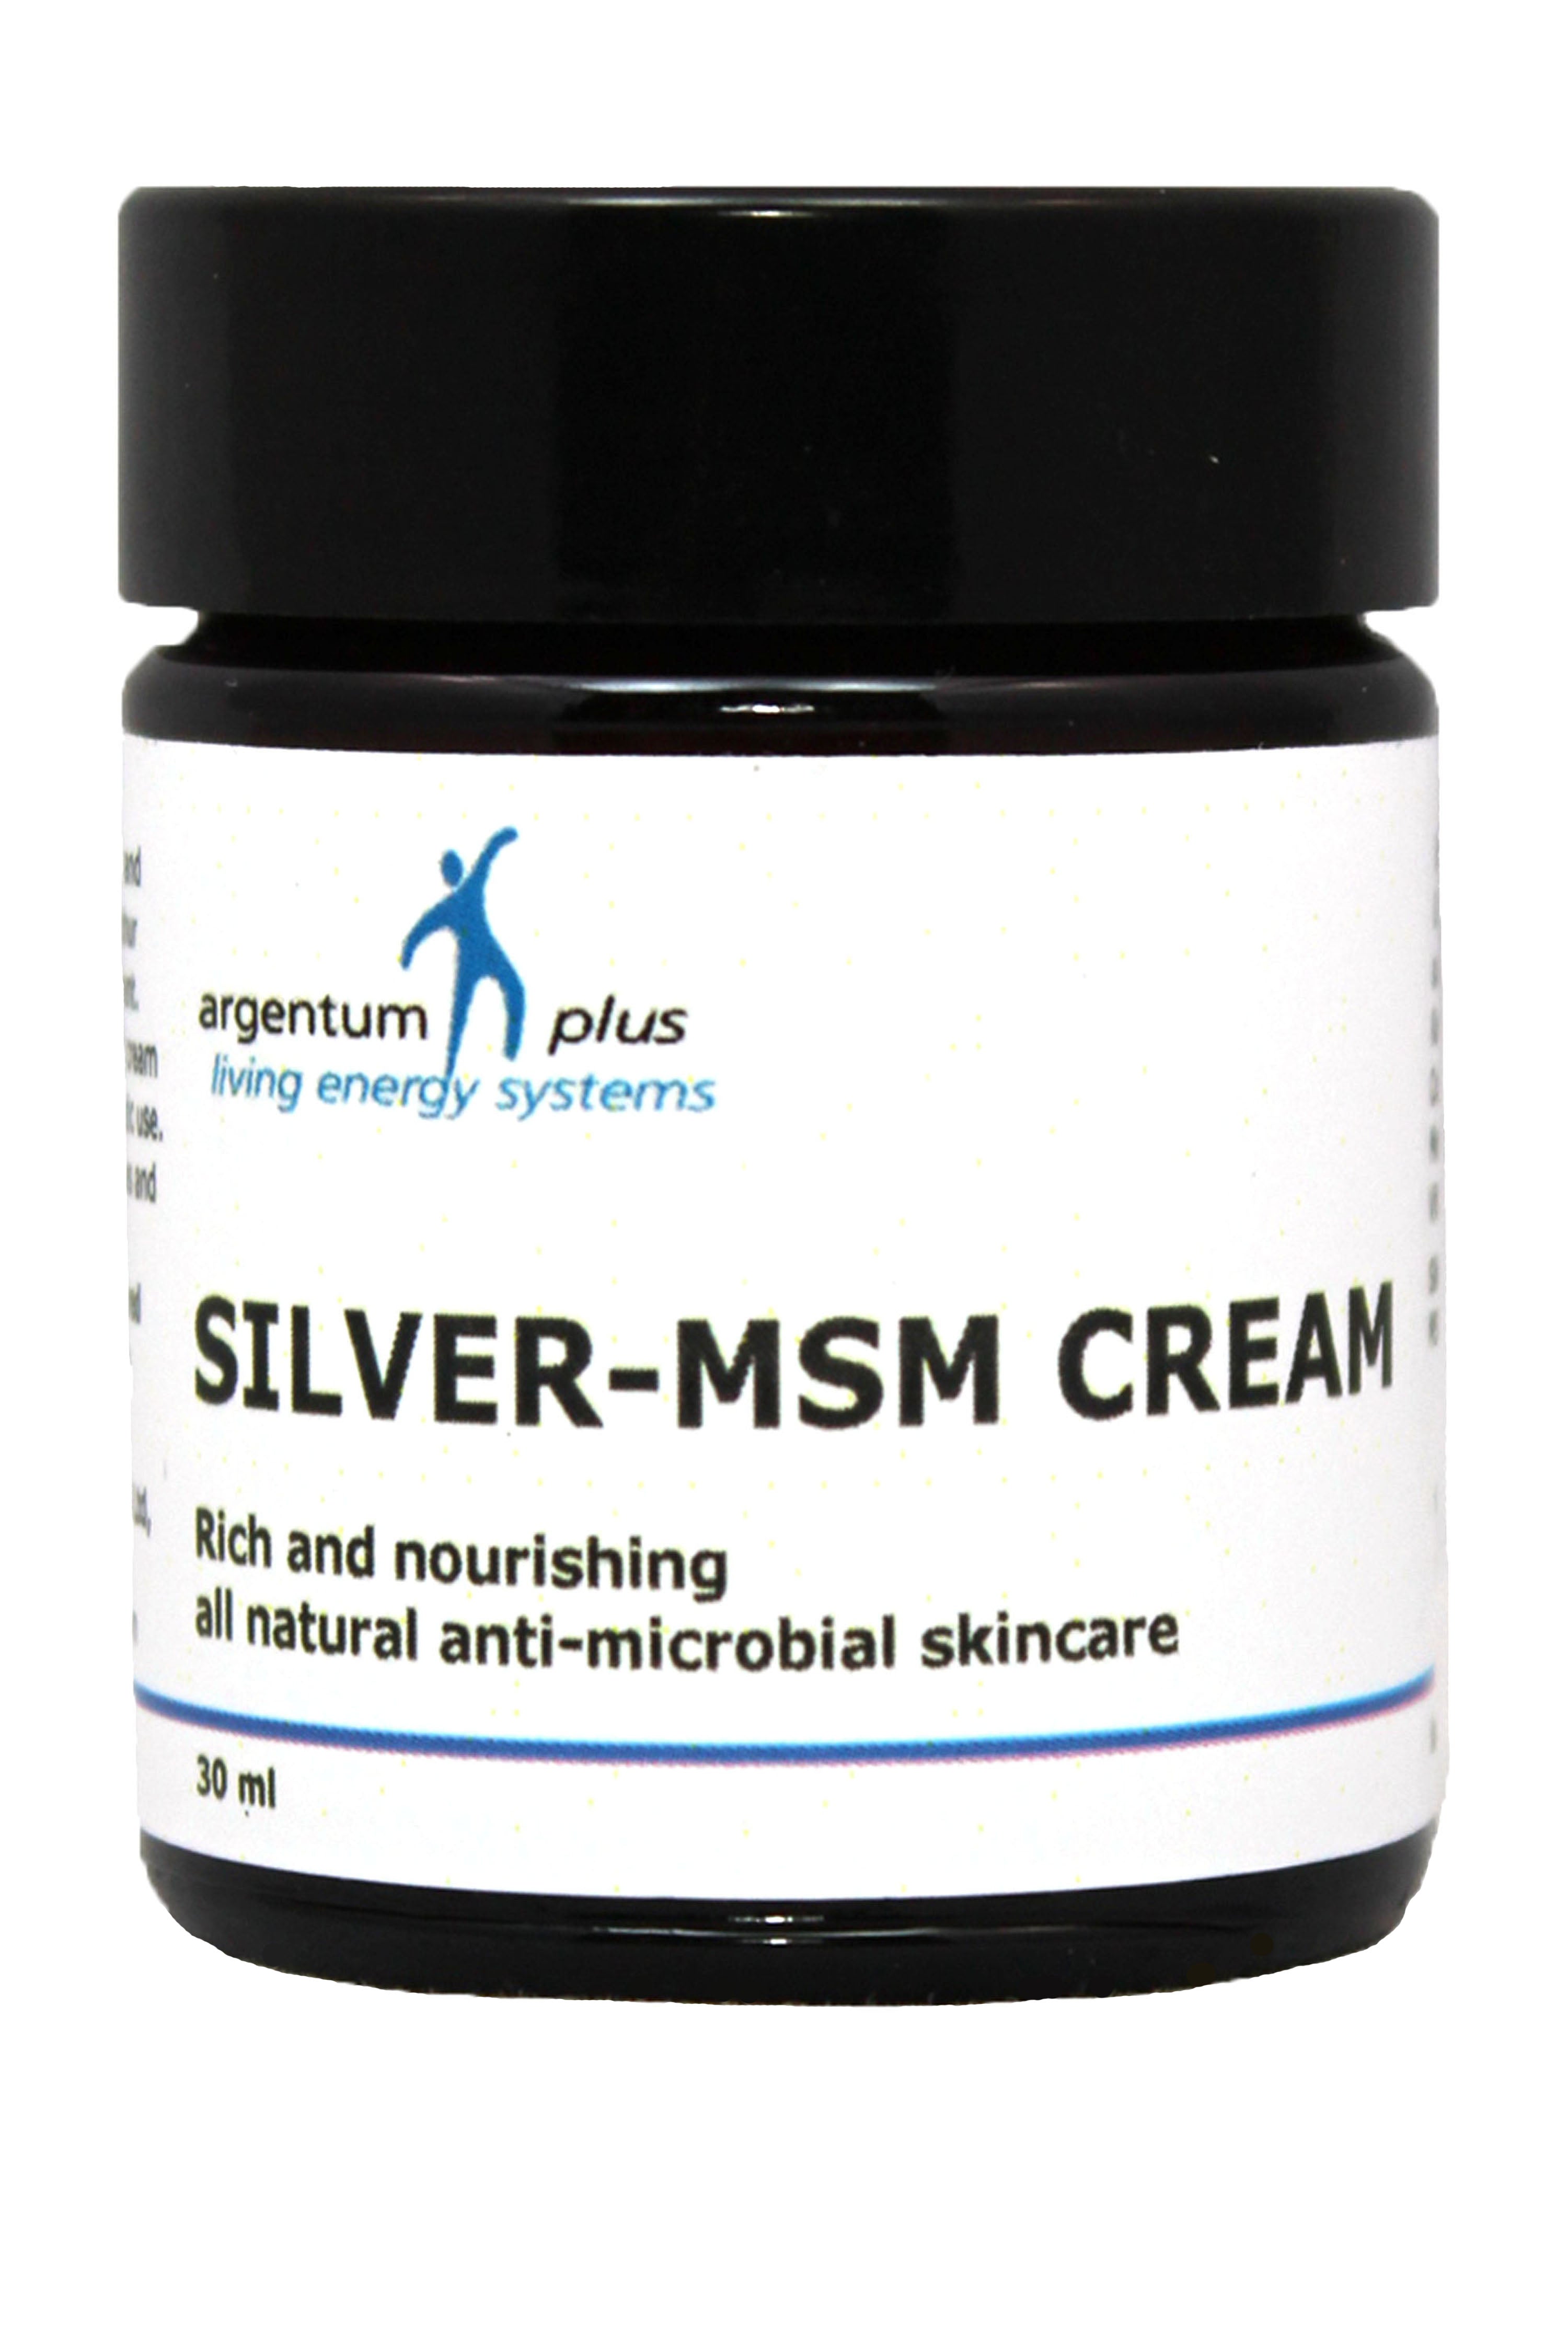 Argentum Plus Silver-MSM Cream